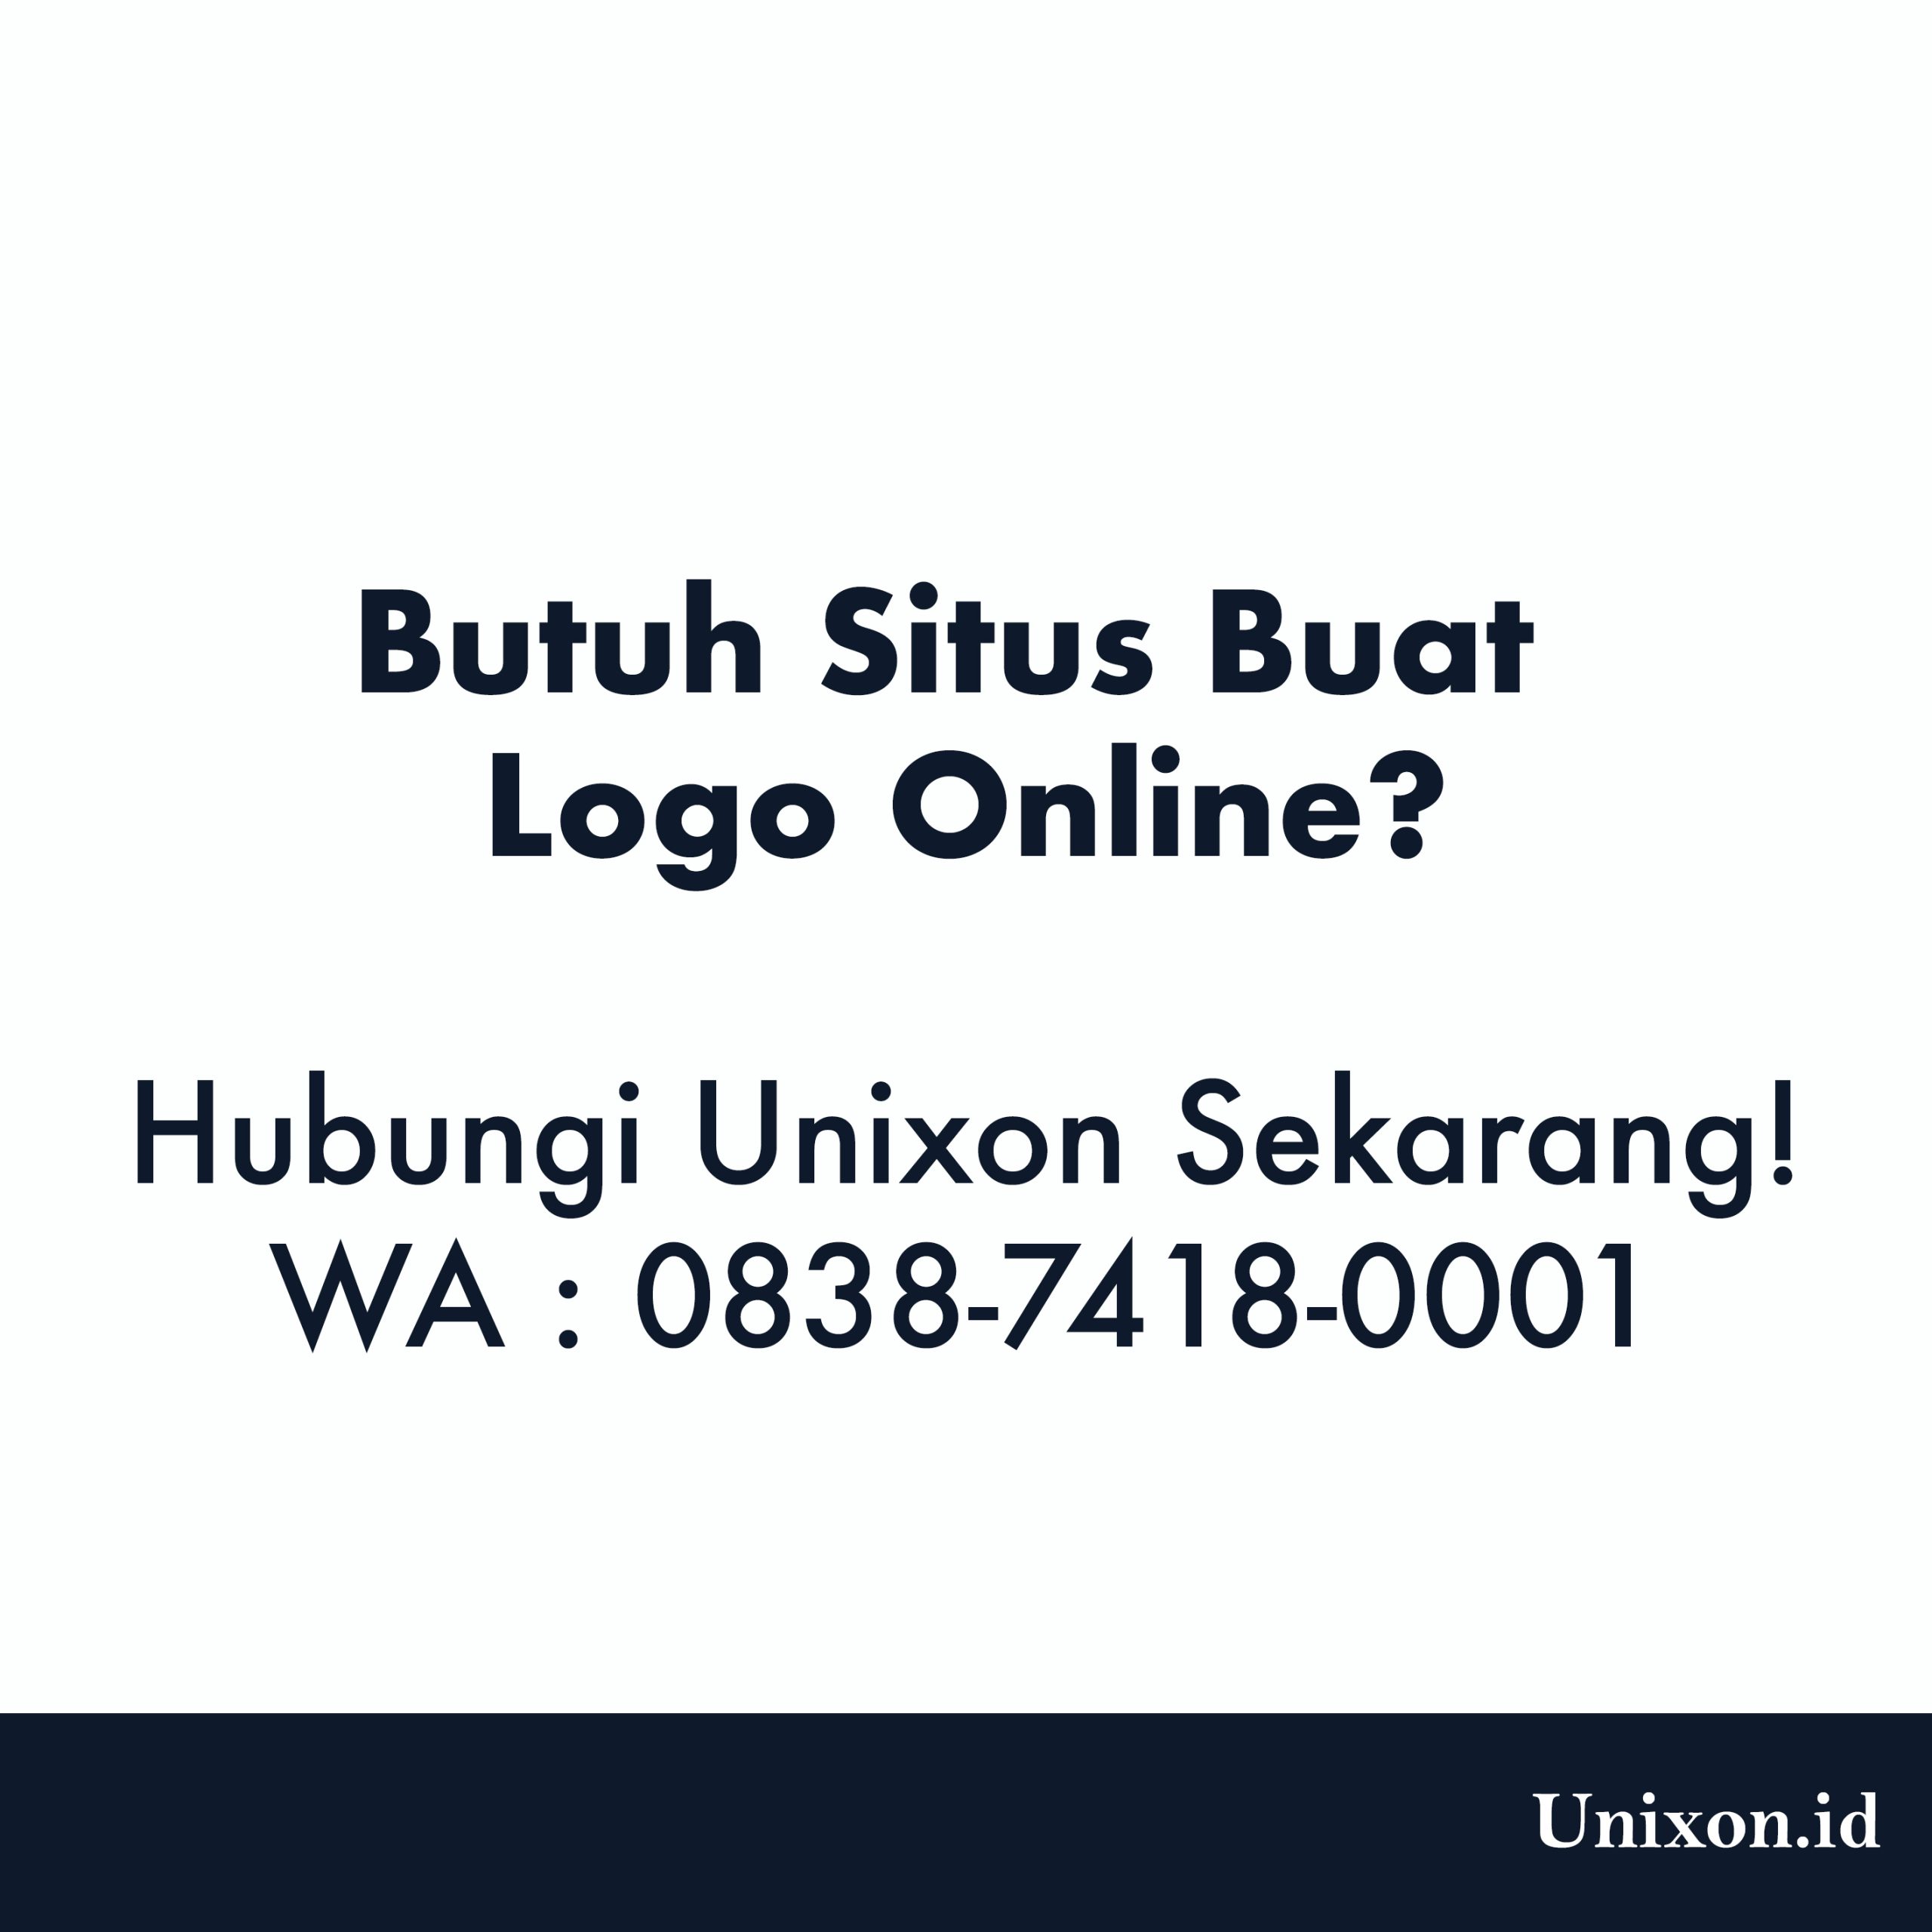 Situs Buat Logo Online